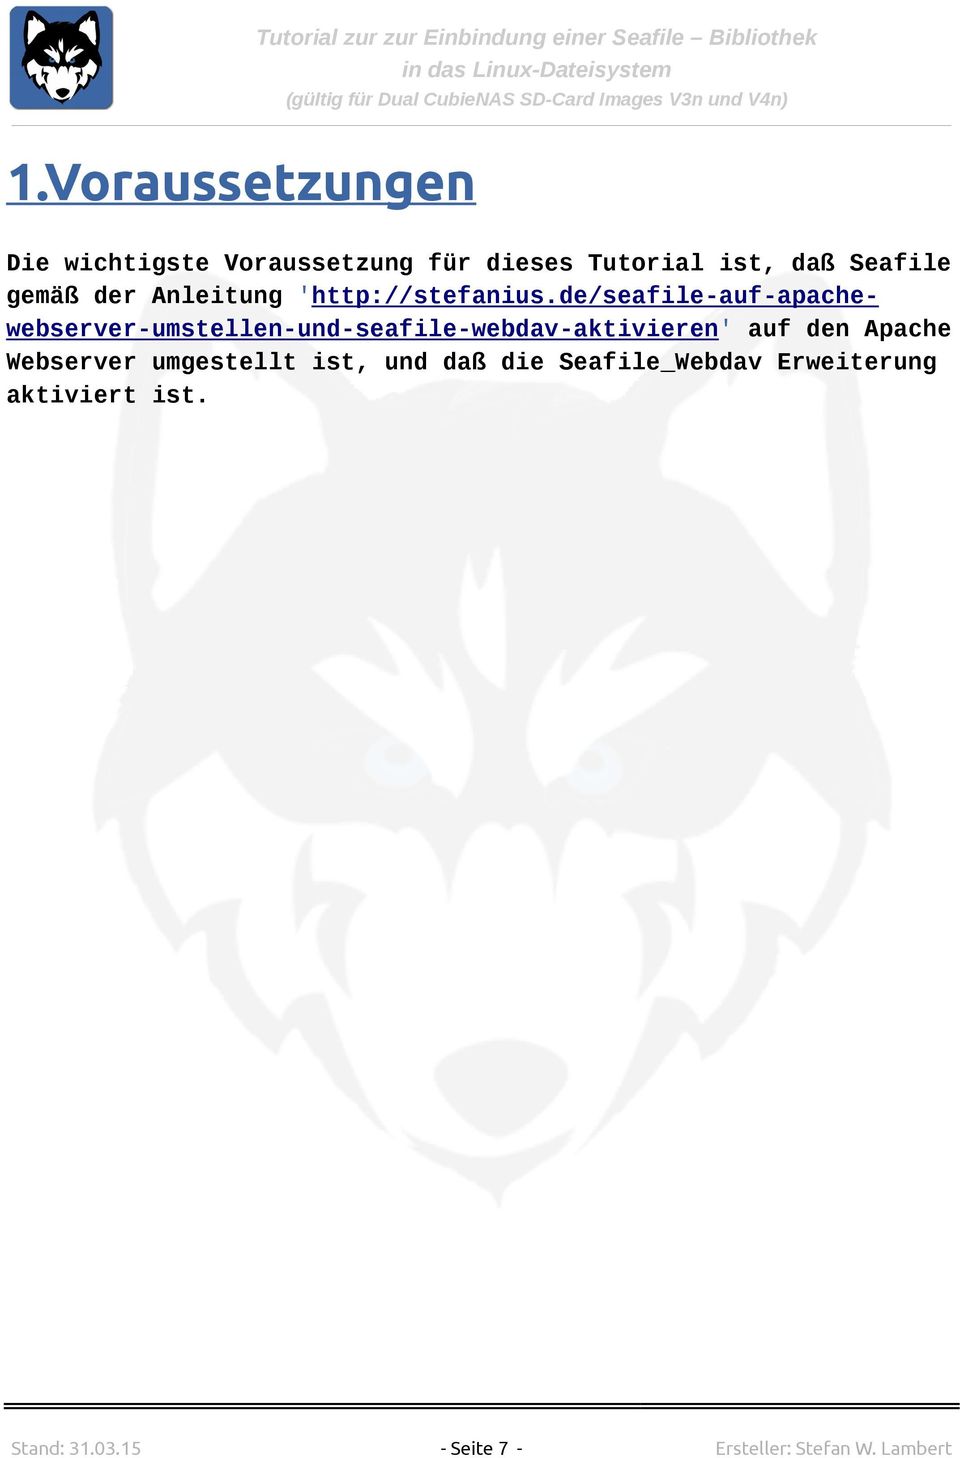 de/seafile-auf-apachewebserver-umstellen-und-seafile-webdav-aktivieren' auf den Apache Webserver